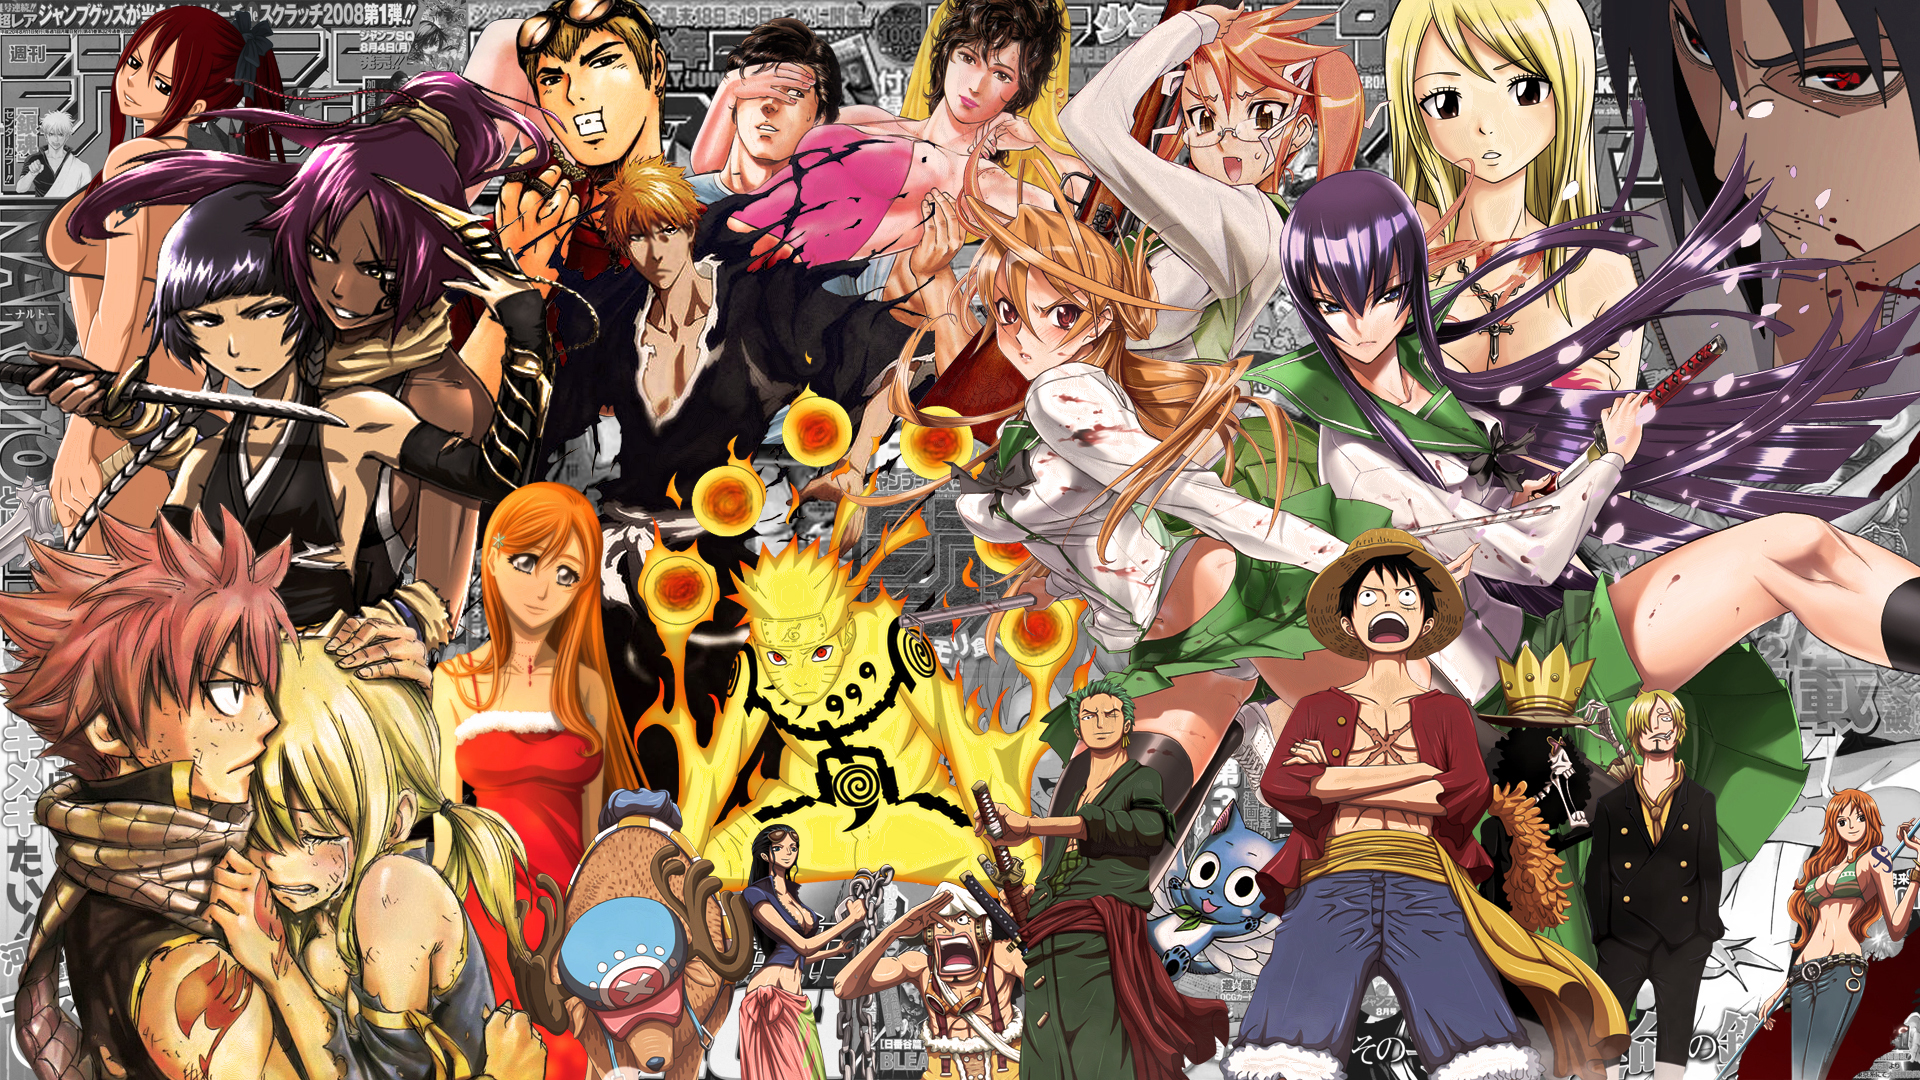 fond d'écran manga,anime,dessin animé,collage,dessin animé,oeuvre de cg